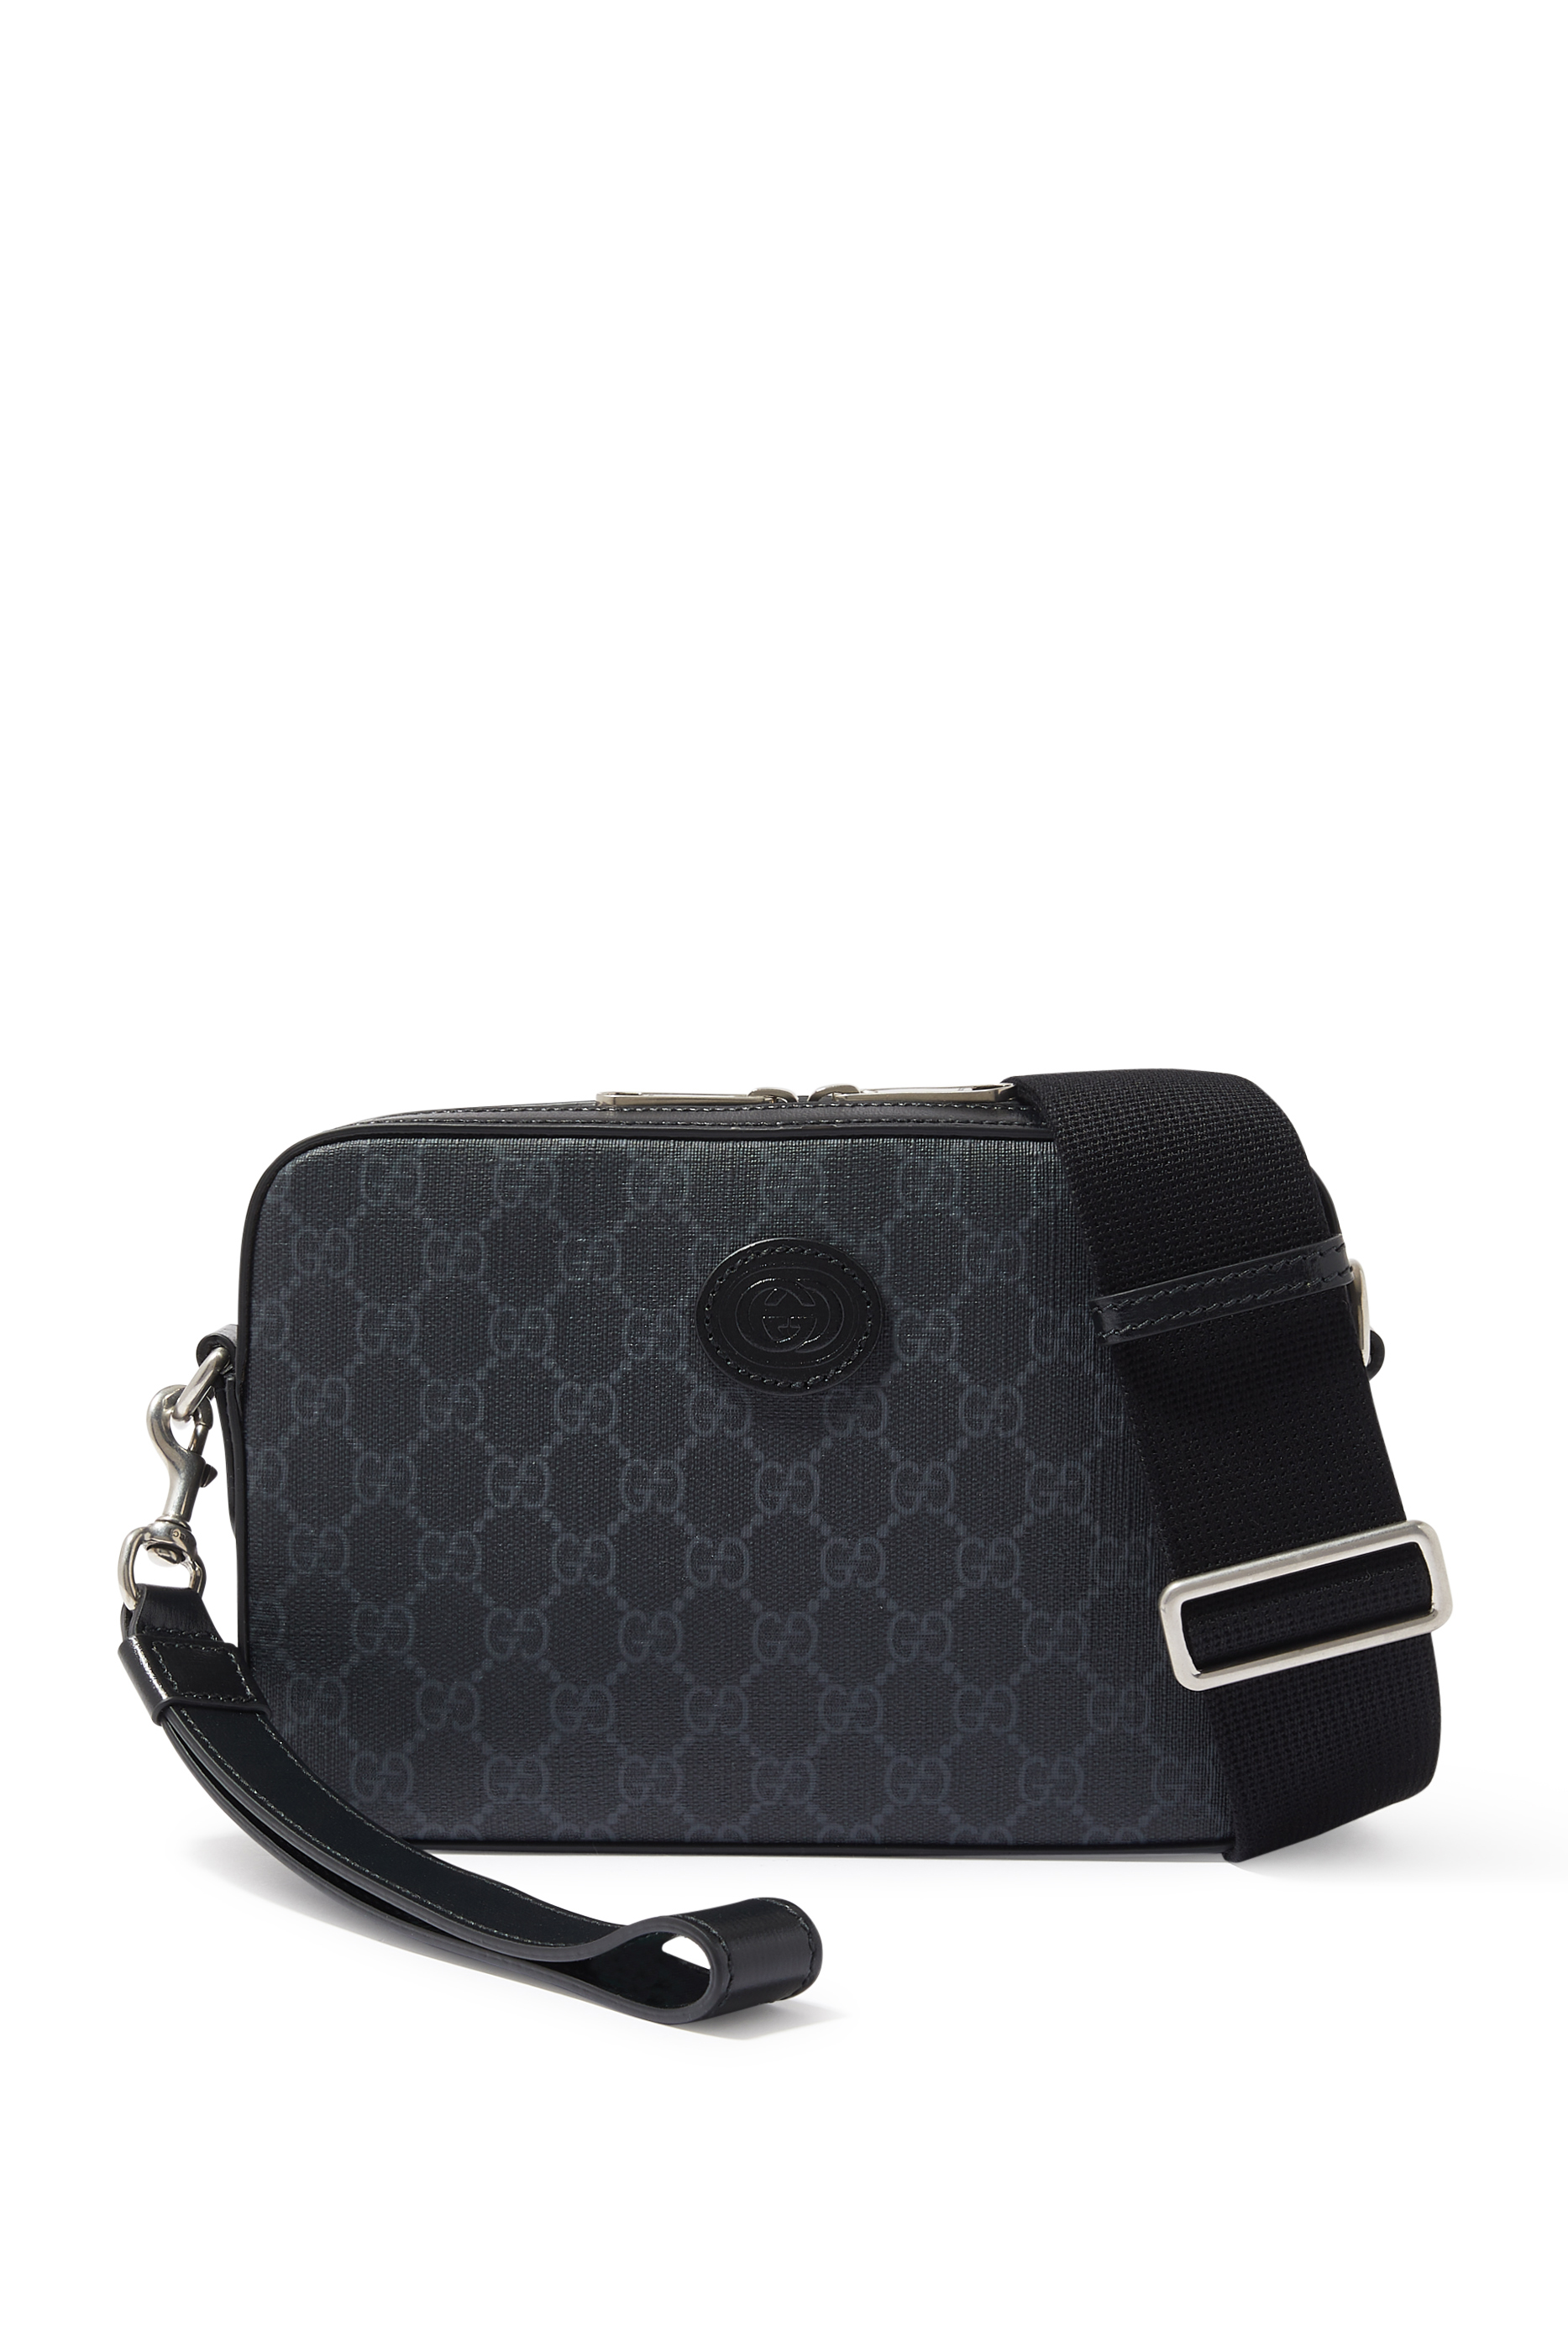 Gucci Interlocking G Shoulder bag 376627